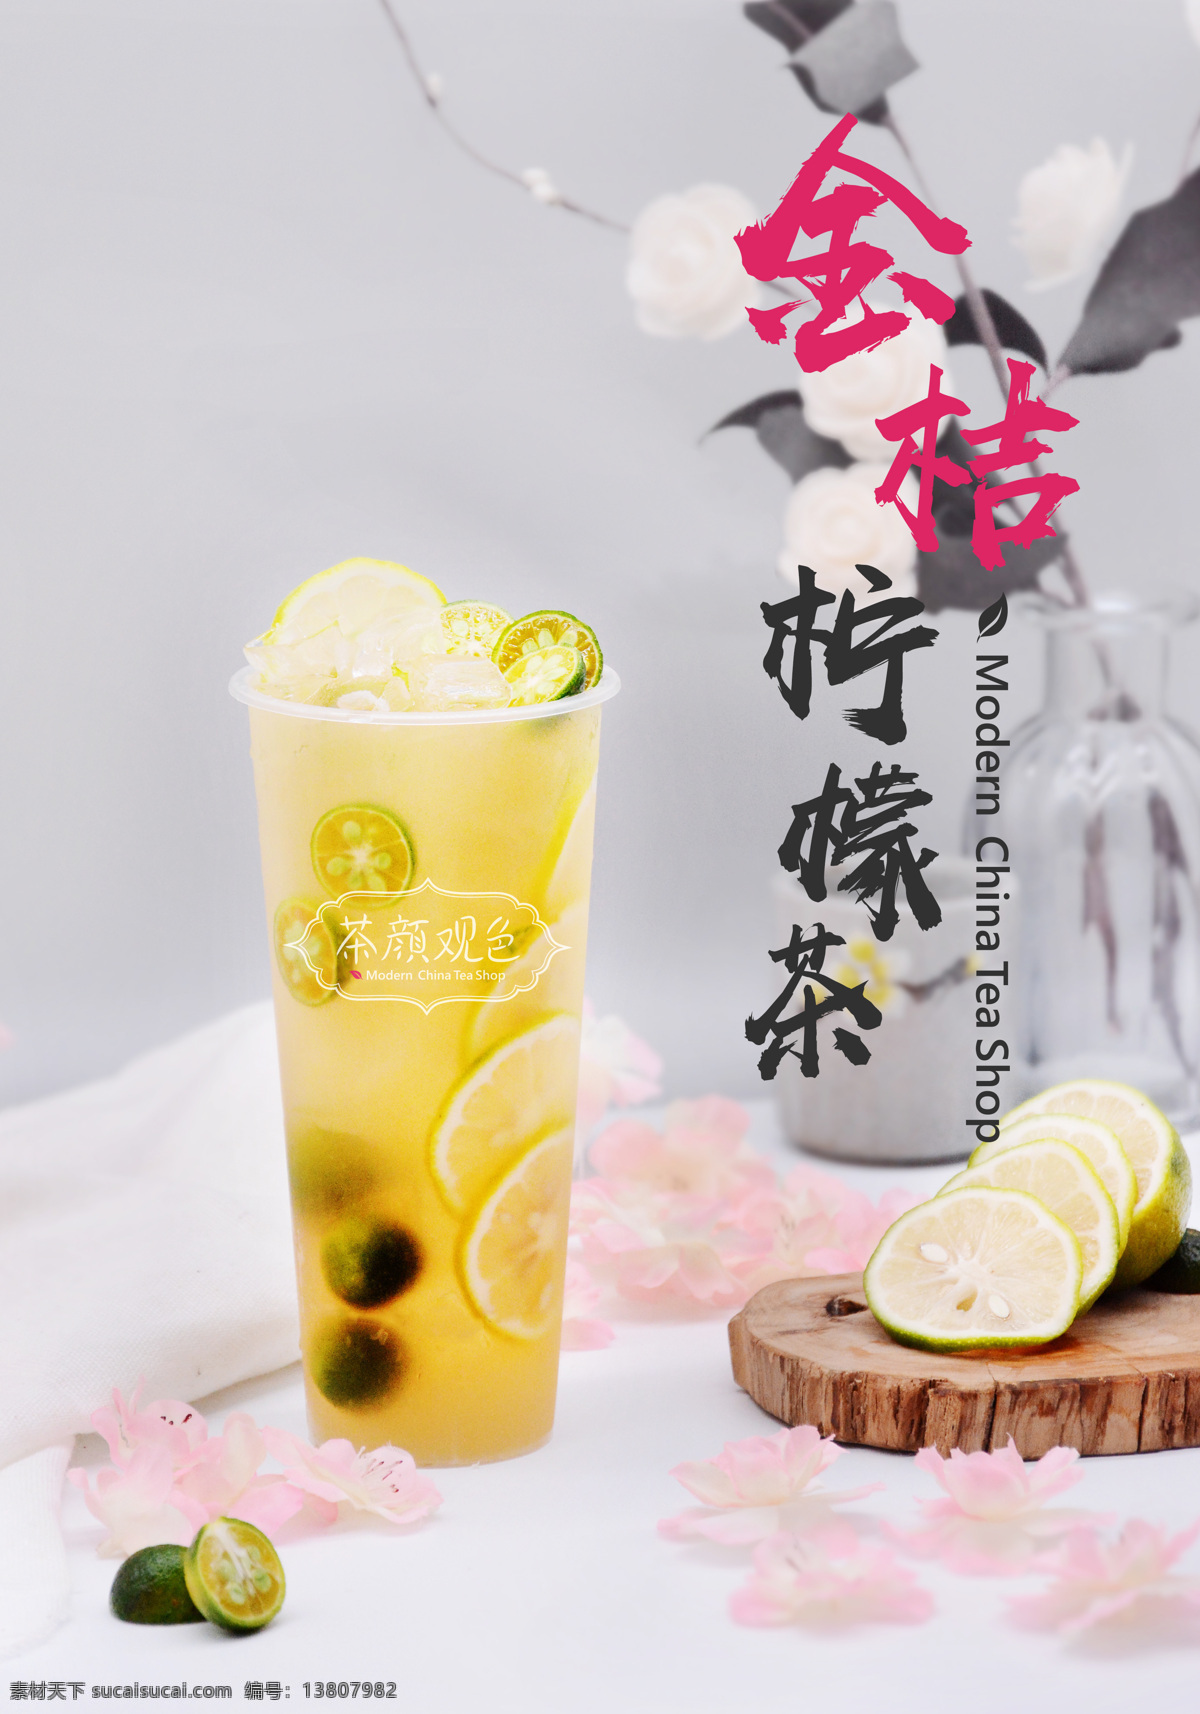 金桔柠檬茶 茶颜观色 奶茶 效果图 高清图 商家